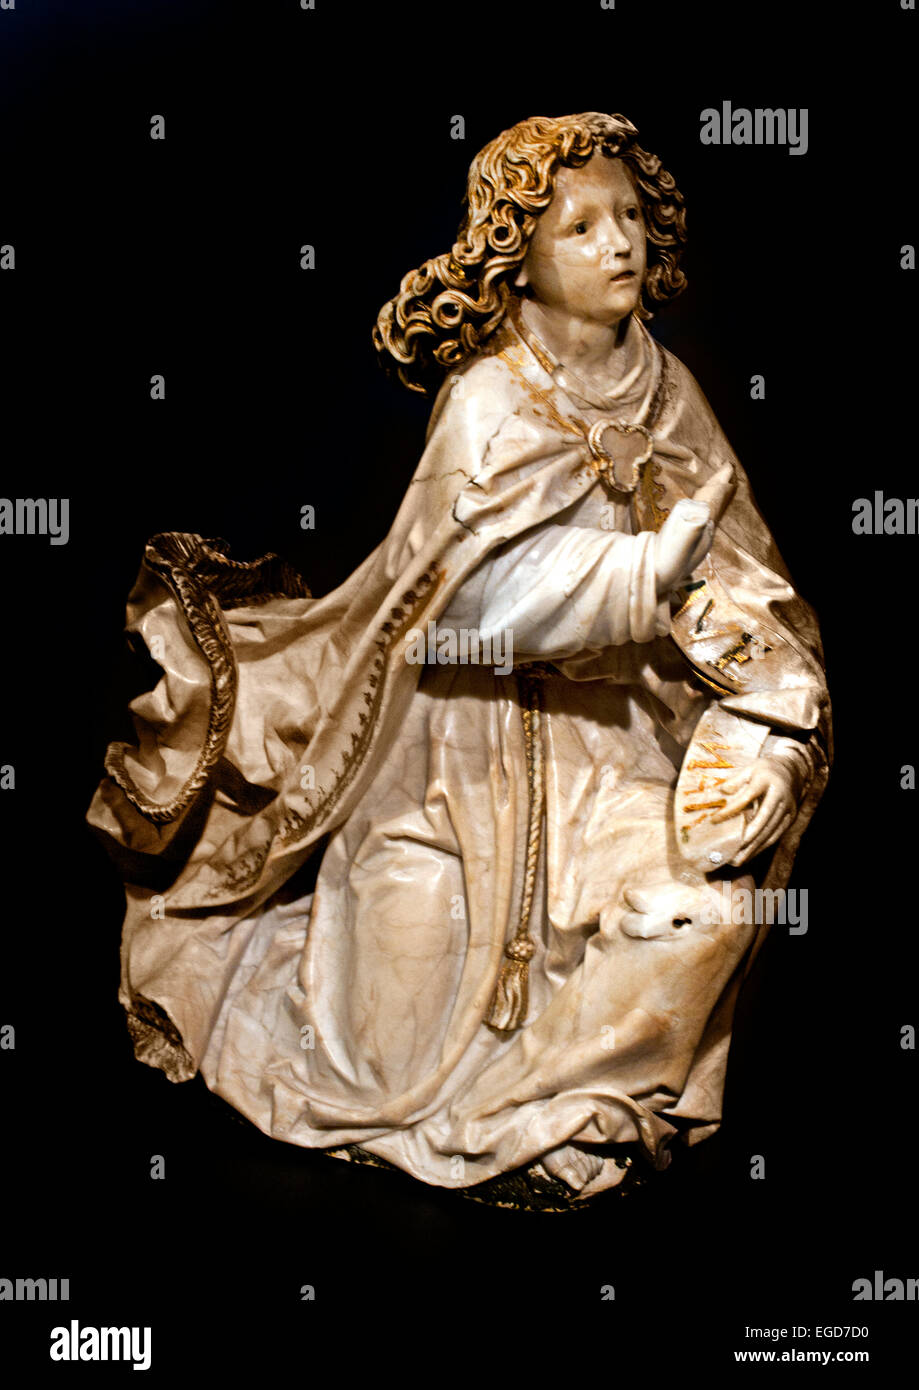 L'Annunciazione c. 1485 - 1487 ( l angelo Gabriele ) Tilman Riemenschneider alabastro (minerale), h 39.5cm × w 40.5cm ( Tilman Riemenschneider, uno dei più importanti scultori tedesco del tardo Medioevo, creato un altamente versione originale dell'Annunciazione qui. L angelo Gabriele, il cui panneggio flutti come egli vola giù, è dinamico e pieno di vitalità, in contrasto con la Virgin subì emozione. Impietrito e prese totalmente di sorpresa, lei guarda nello spazio mentre si chiude il suo libro. } Foto Stock